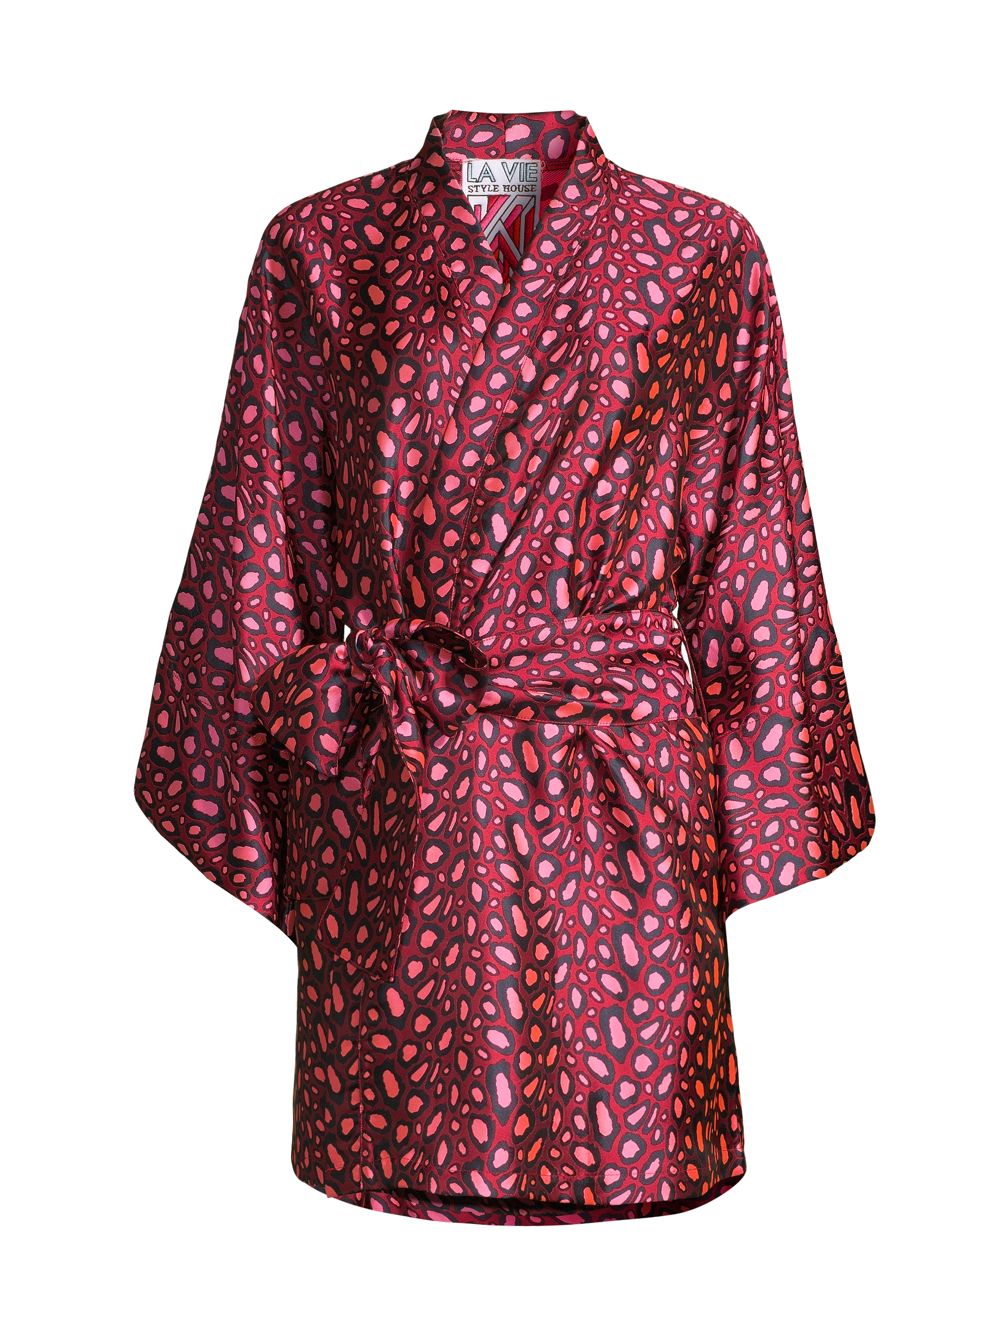 Мини-платье с запахом и леопардовым принтом La Vie Style House, розовый мини платье из парчи с запахом la vie style house белый